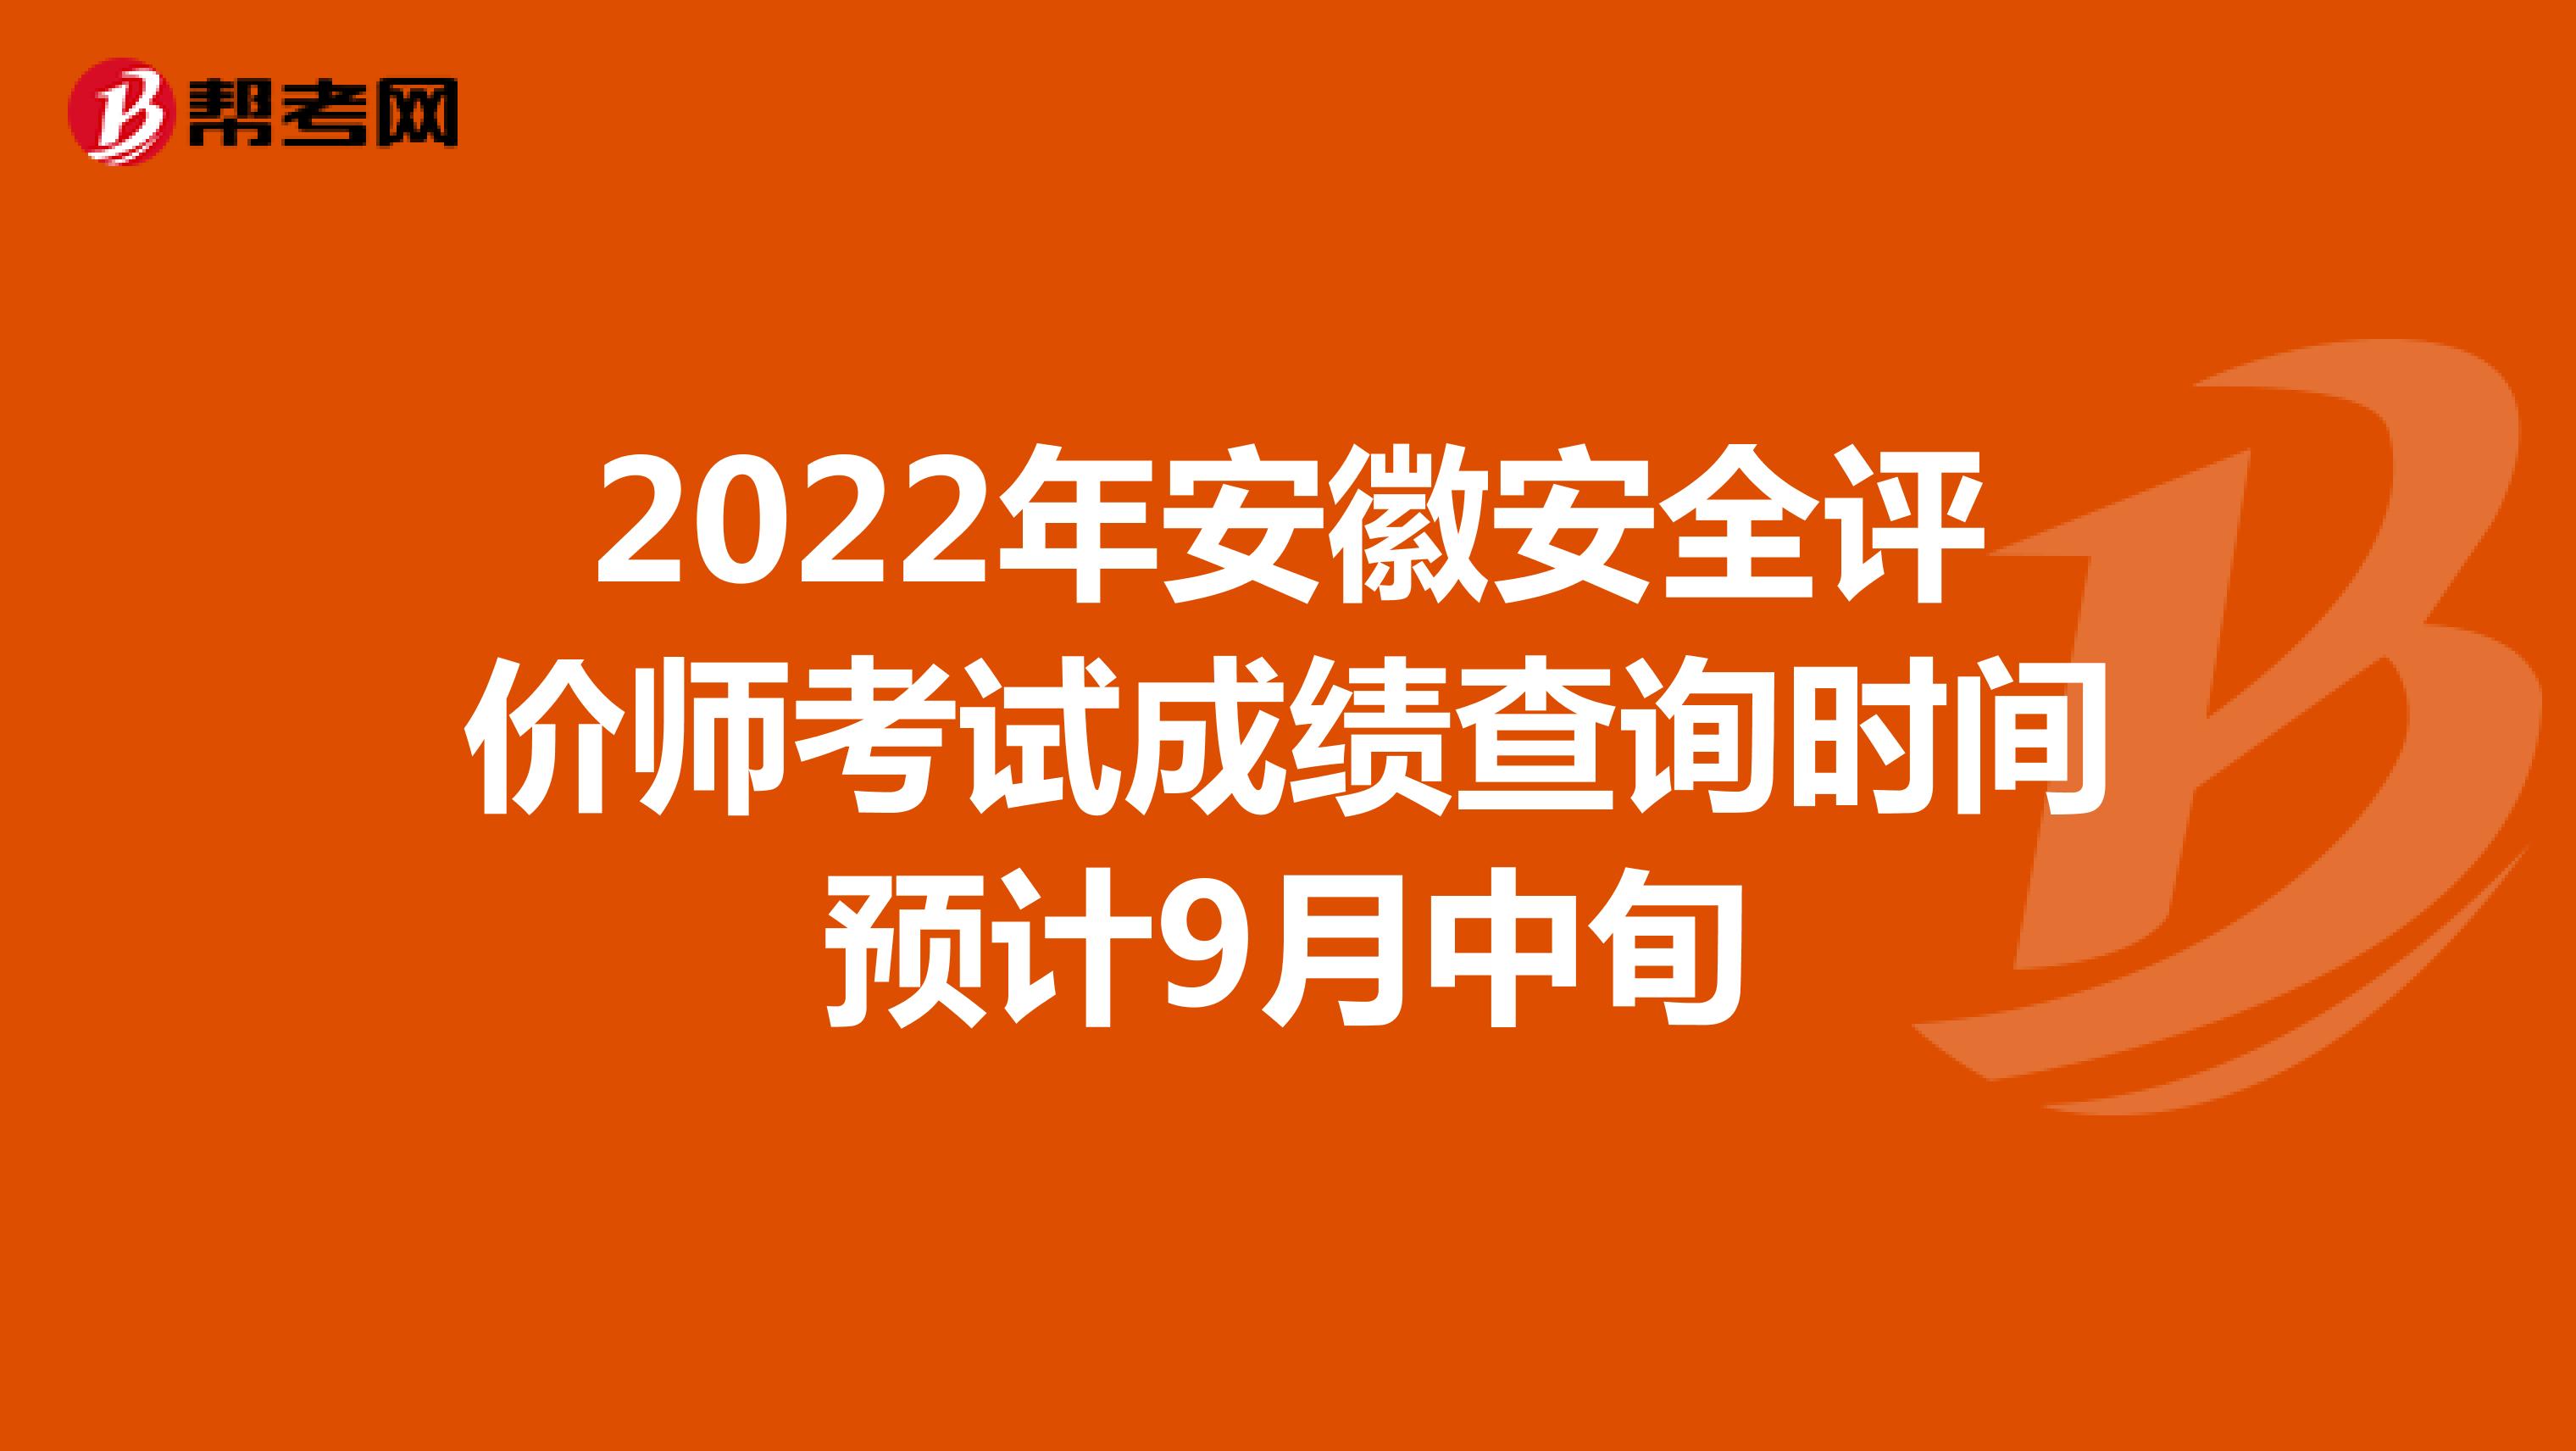 2022年安徽安全评价师考试成绩查询时间预计9月中旬